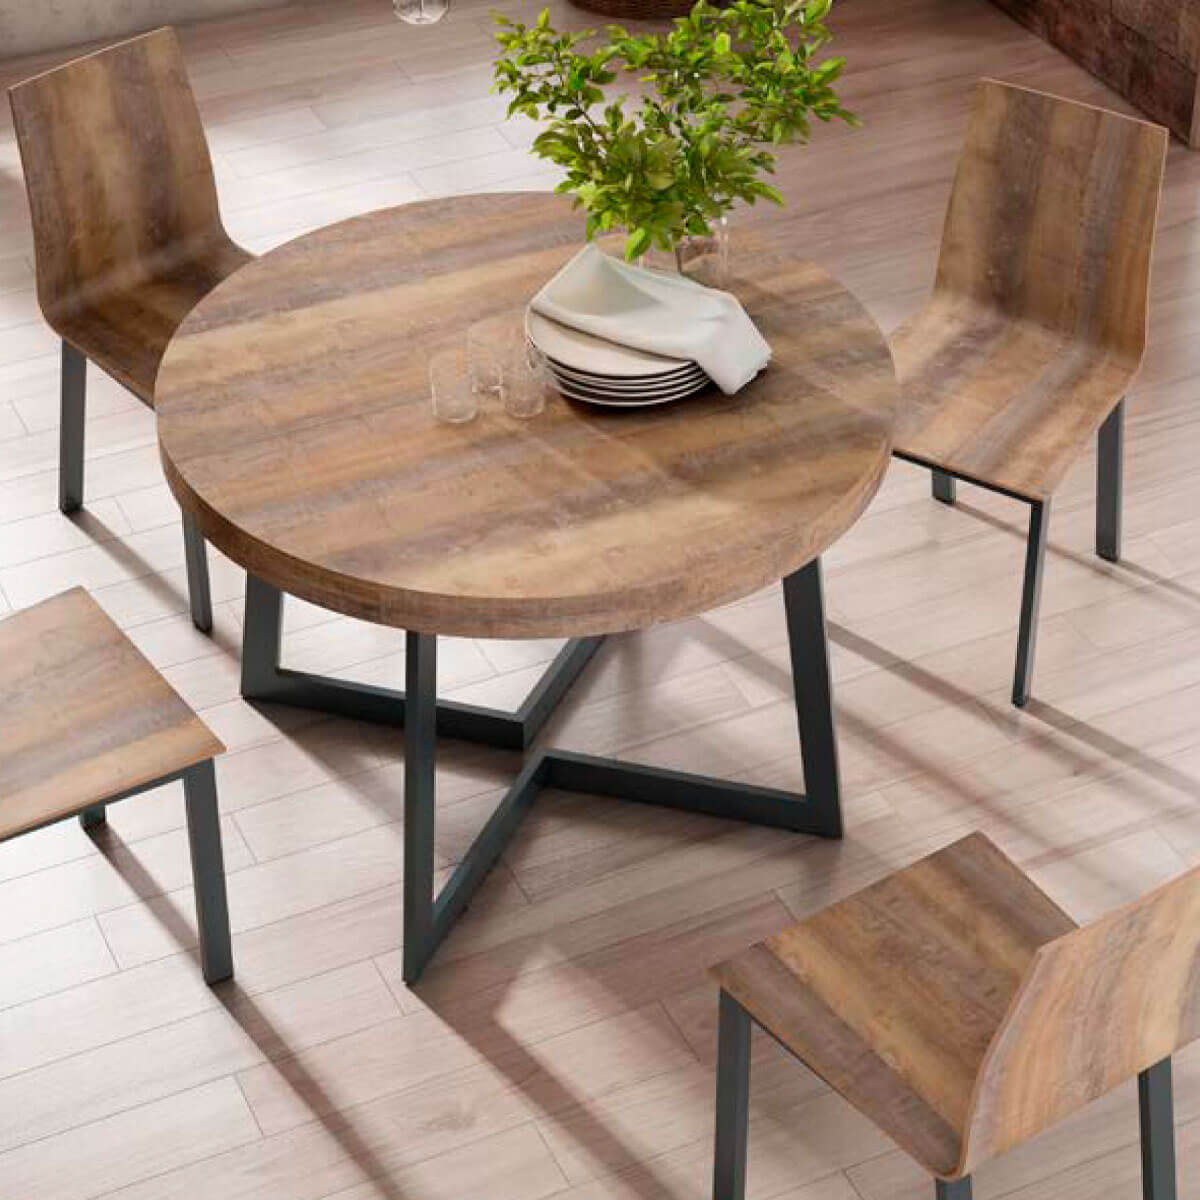 Mesa con tablero redondo extensible a 370 cm en madera de melamina